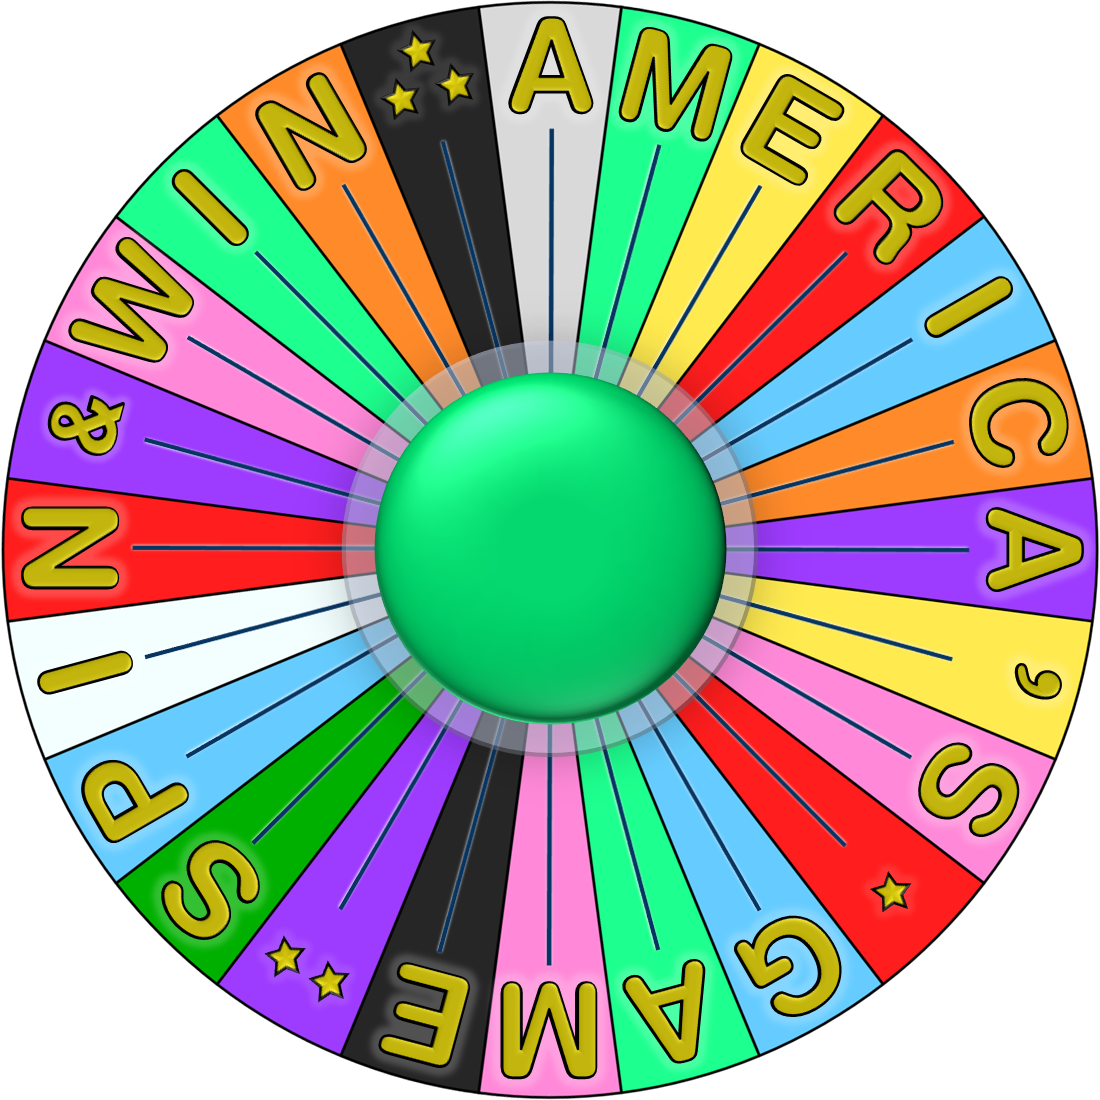 Image - Bonus Wheel Reg W.png - Game Shows Wiki